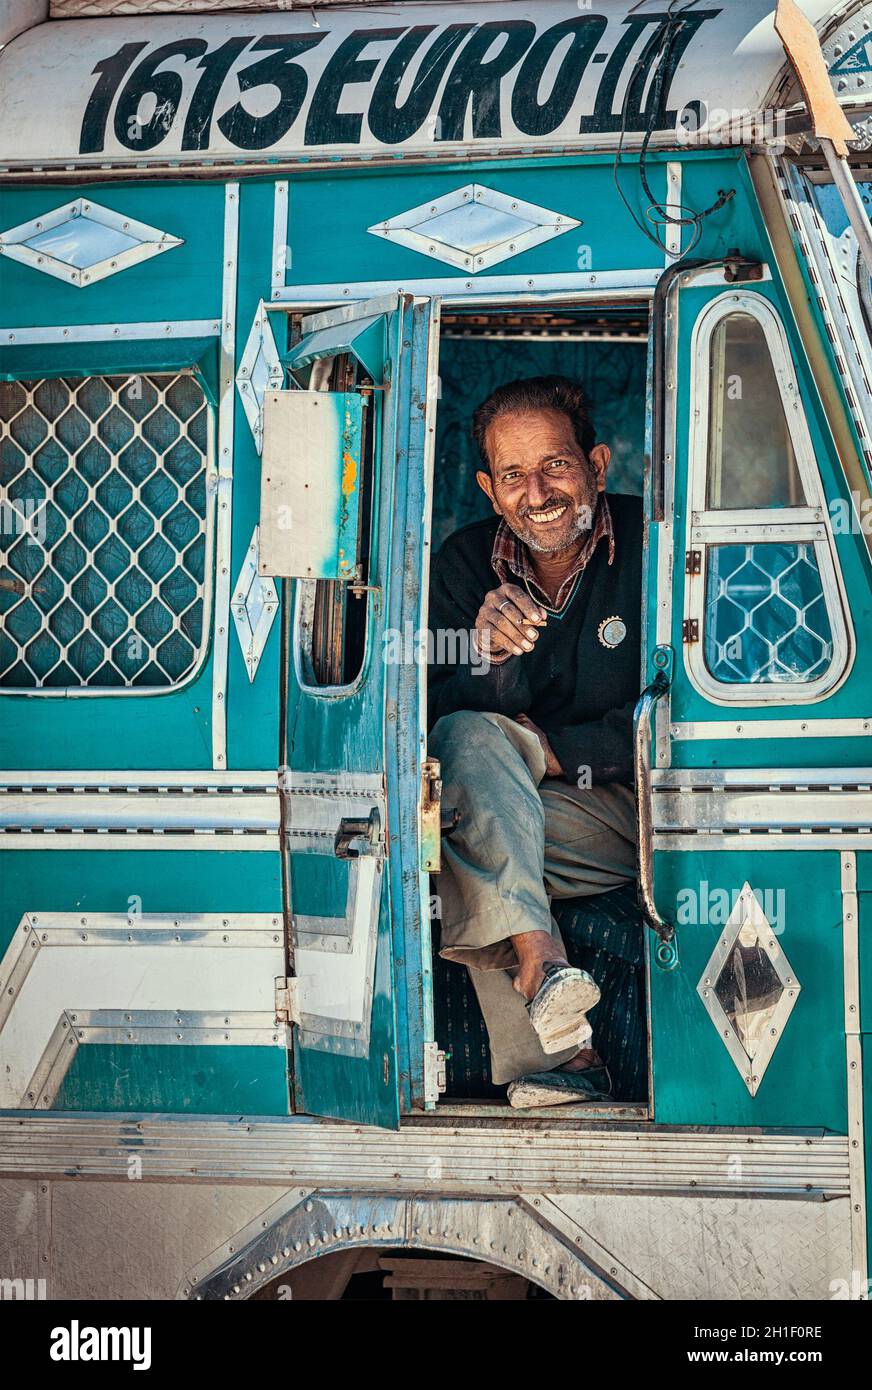 SARCHU, INDIEN - 2. SEPTEMBER 2011: Fahrer eines indischen LKW auf der Manali-Leh-Straße im Himalaya in Ladakh, Indien Stockfoto